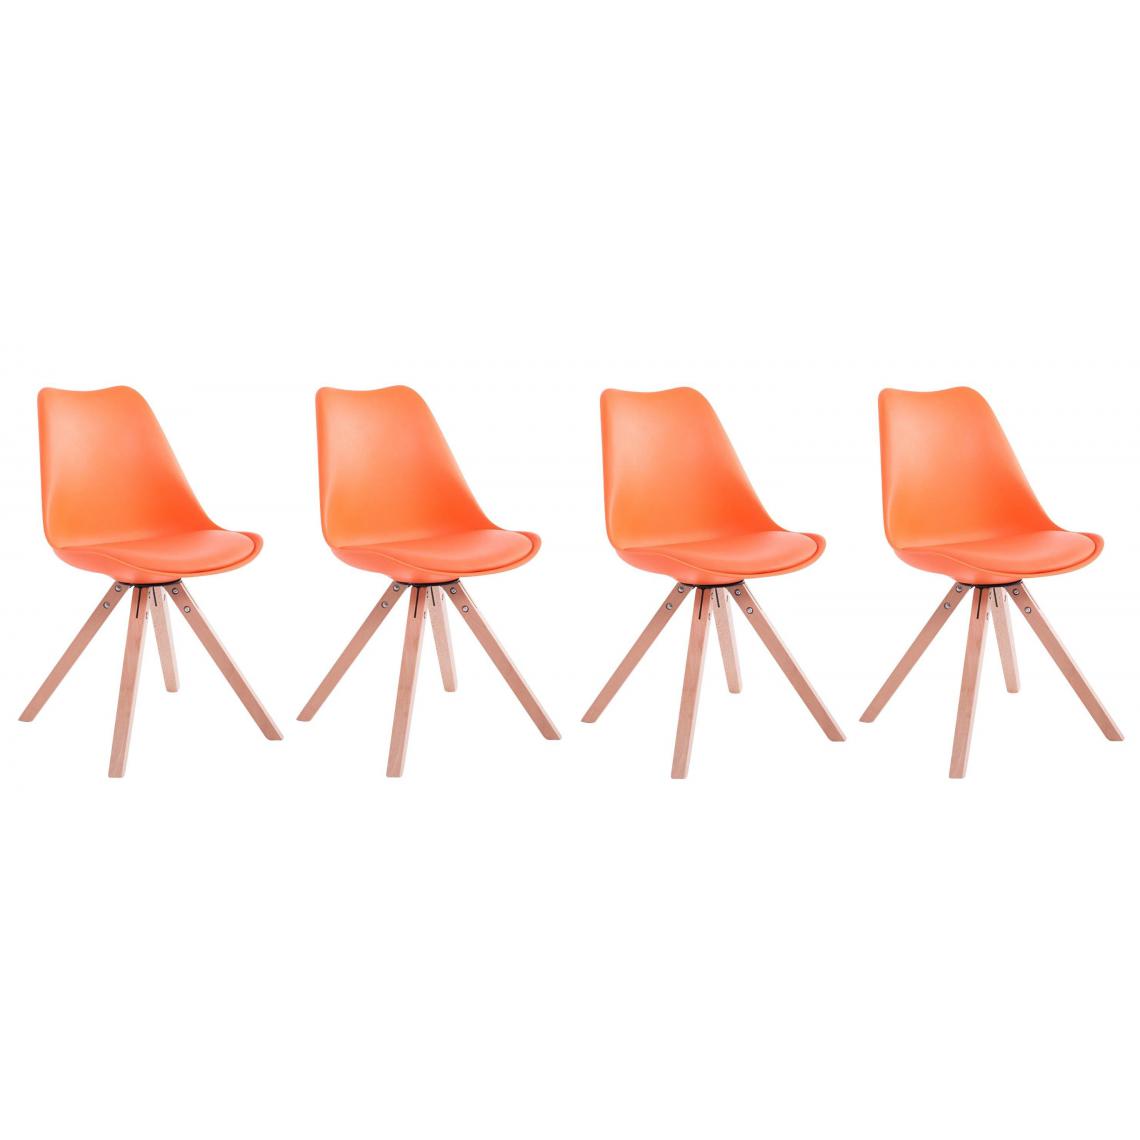 Decoshop26 - Lot de 4 chaises de salle à manger scandinave simili-cuir orange pieds bois CDS10124 - Chaises